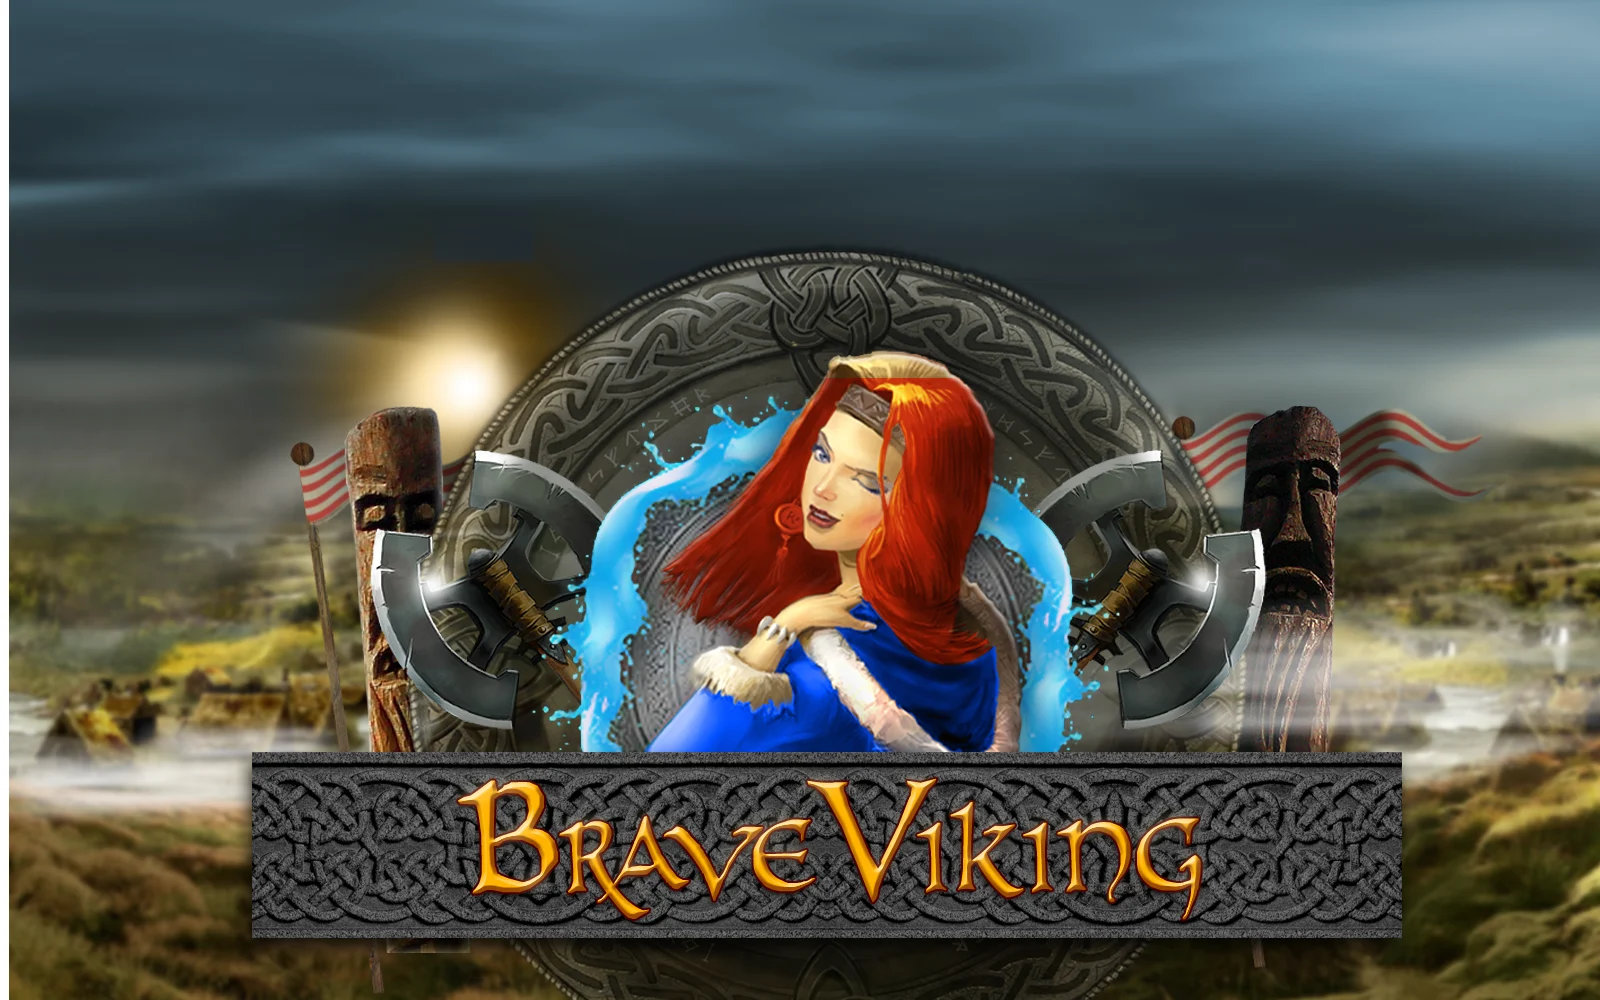 Play Brave Viking on Starcasino.be online casino